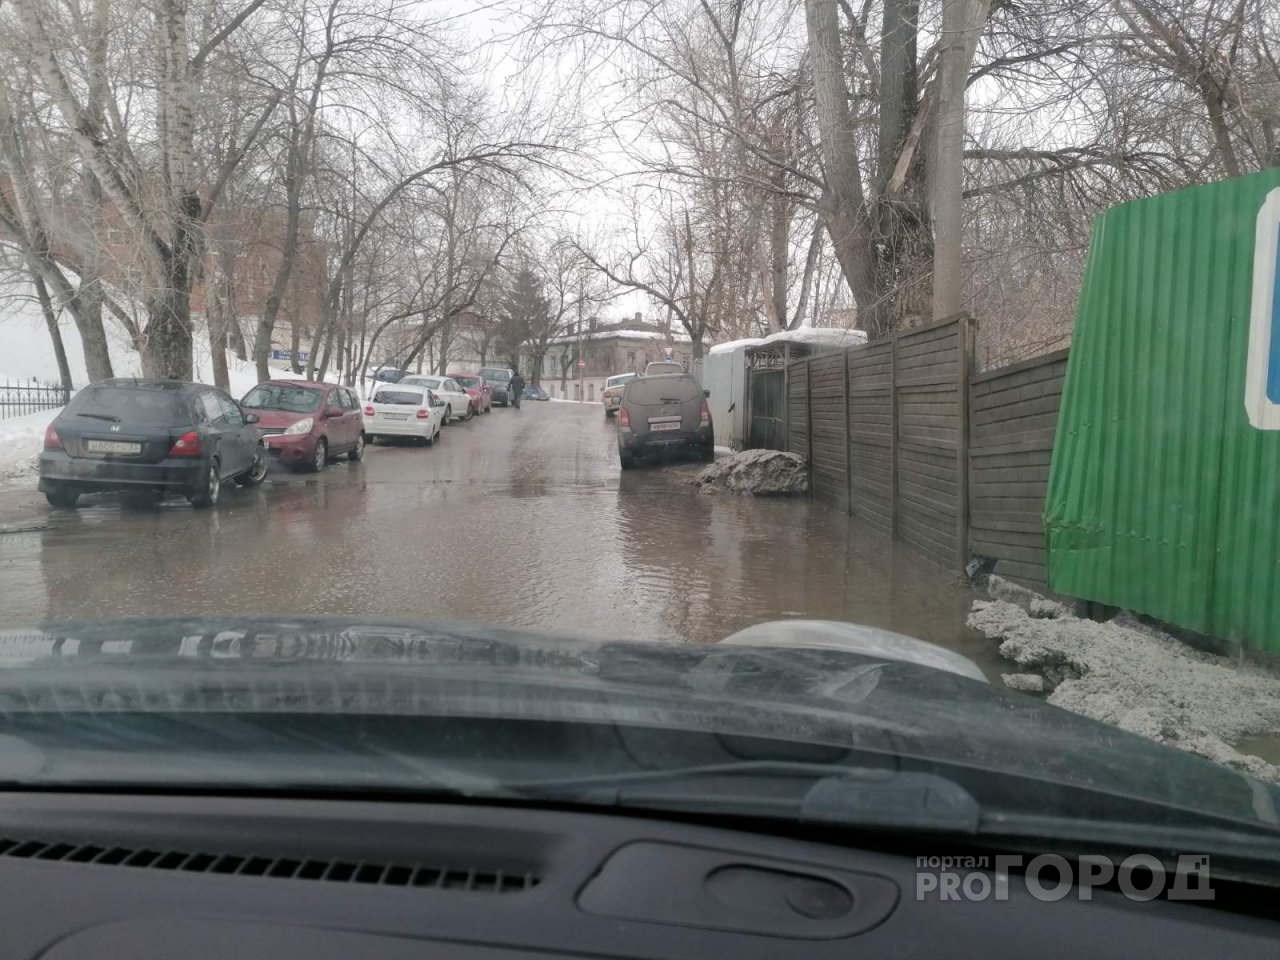 Областные власти упрекнули руководство Владимира в плохой уборке снега